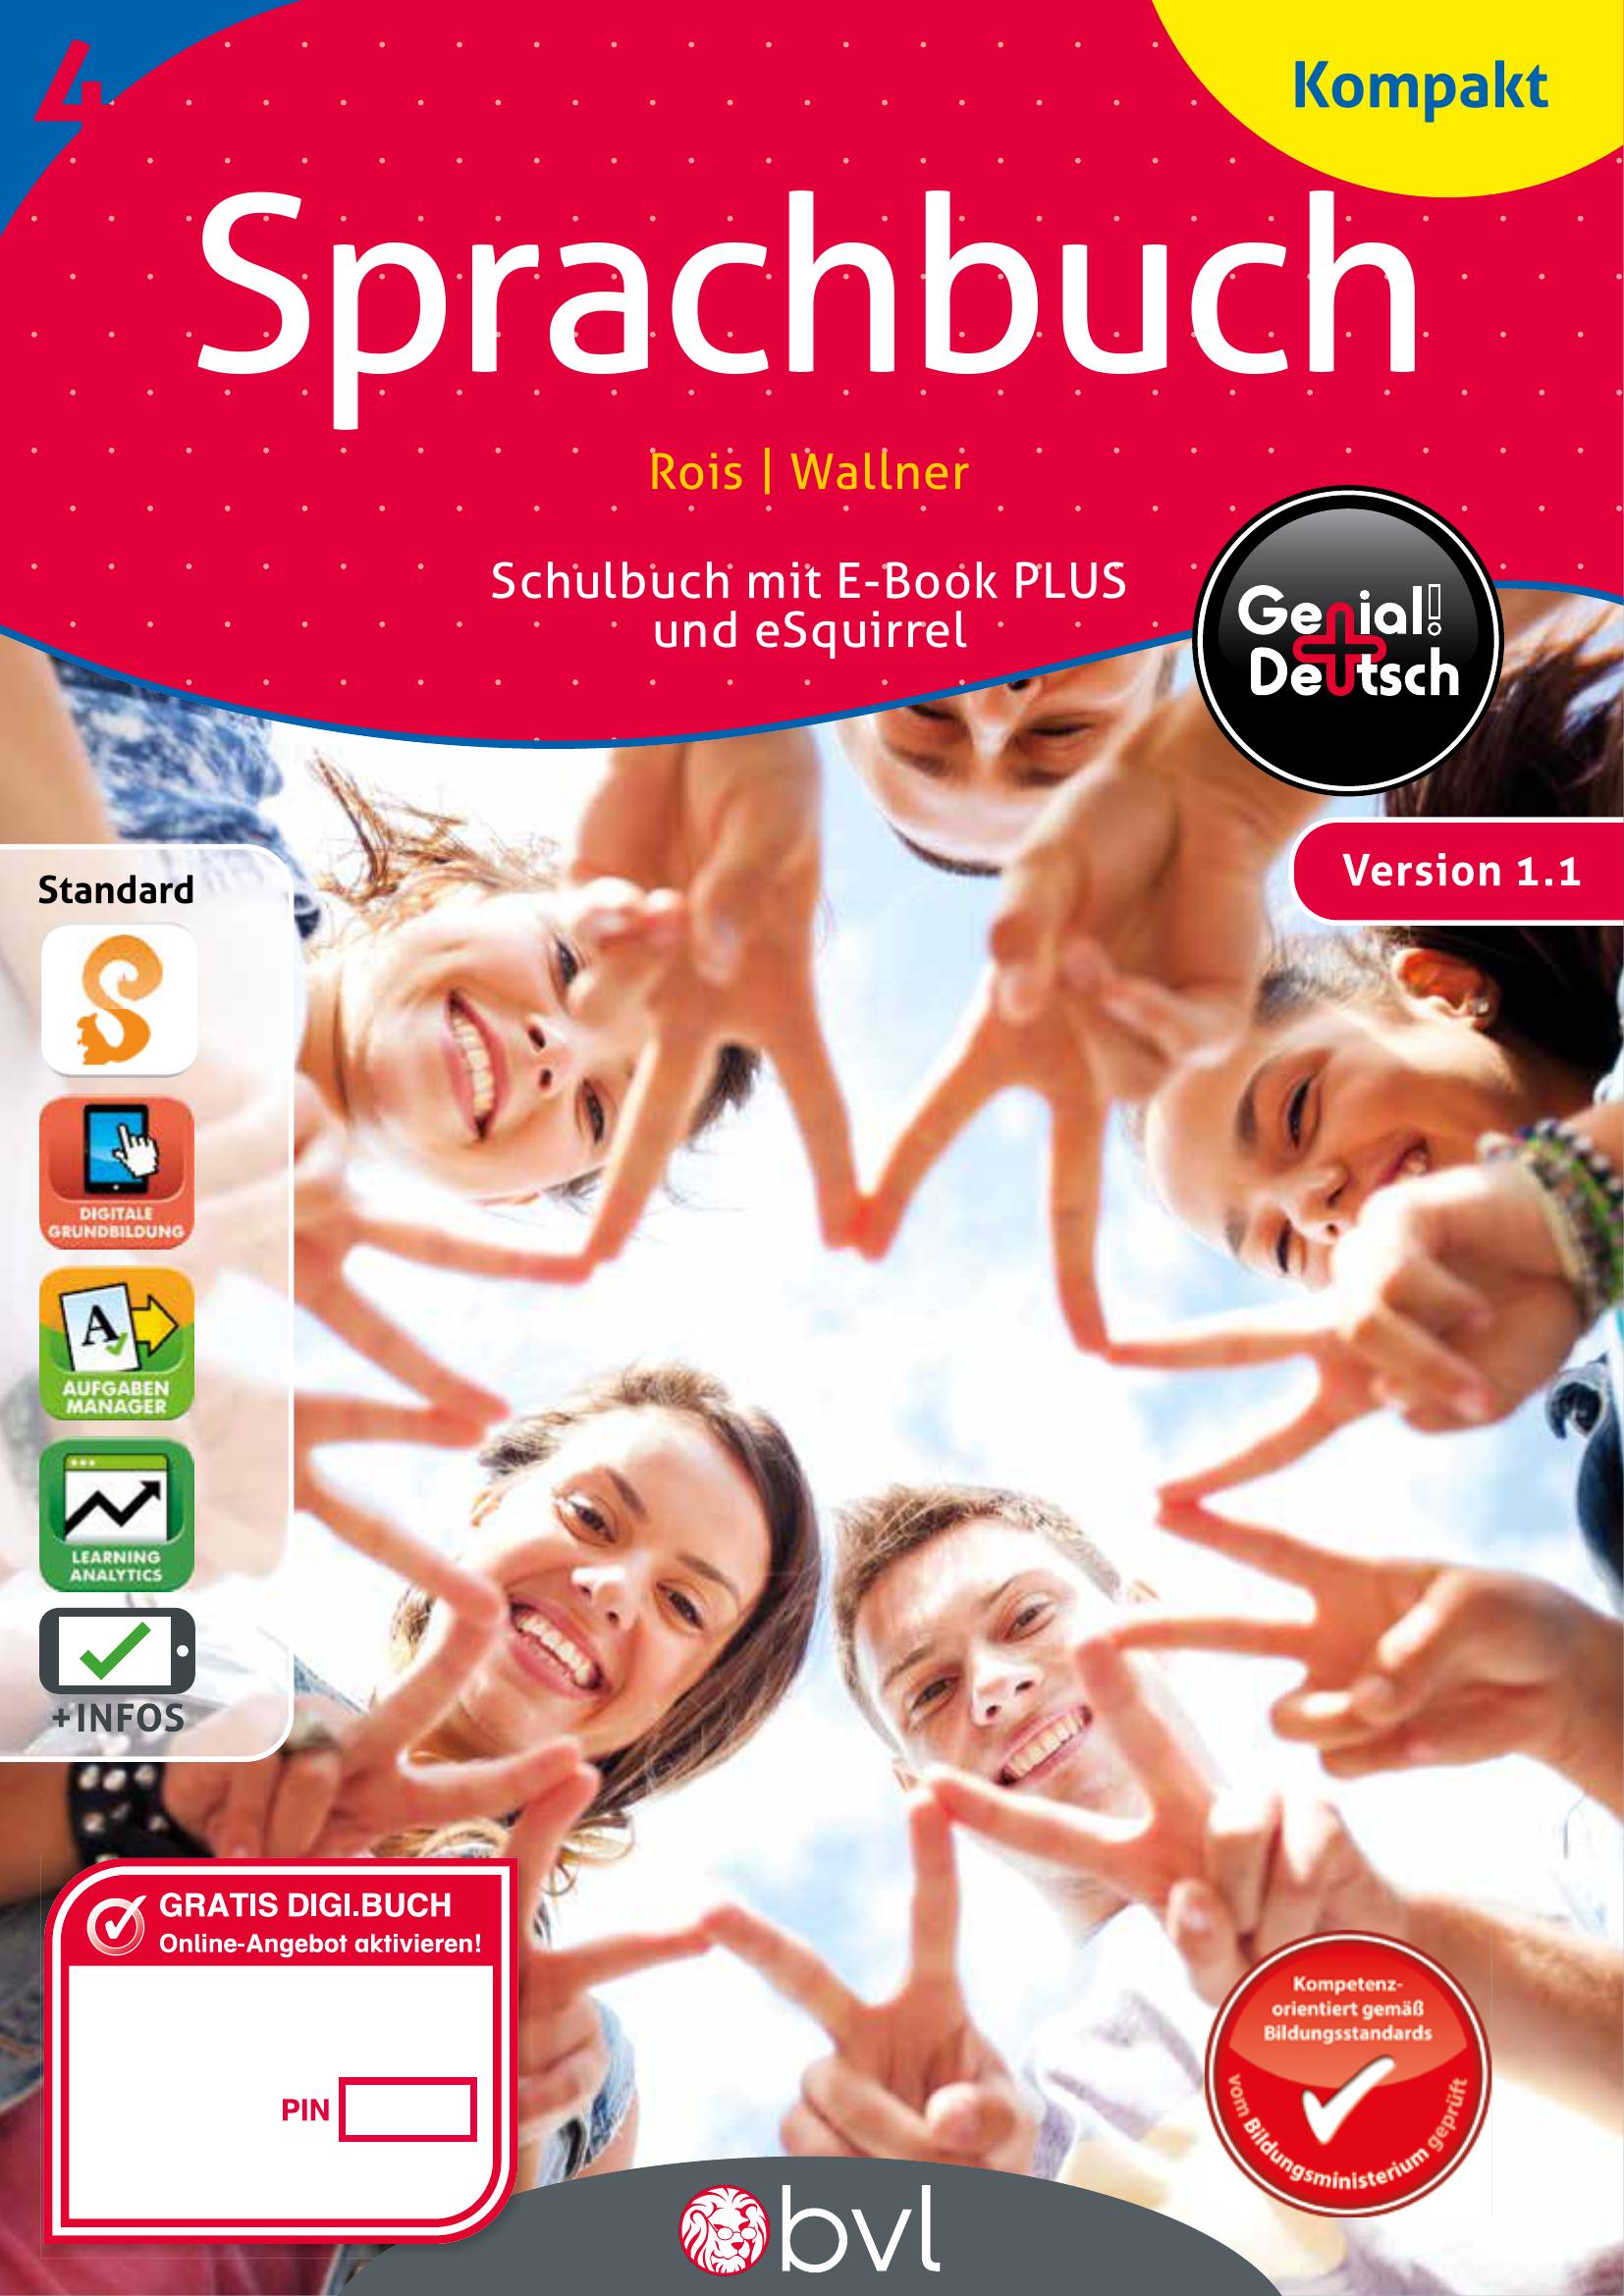 Genial! Deutsch Sprachbuch Kompakt 4 IKT v1.2 PLUS-Lizenz mit eSquirrel